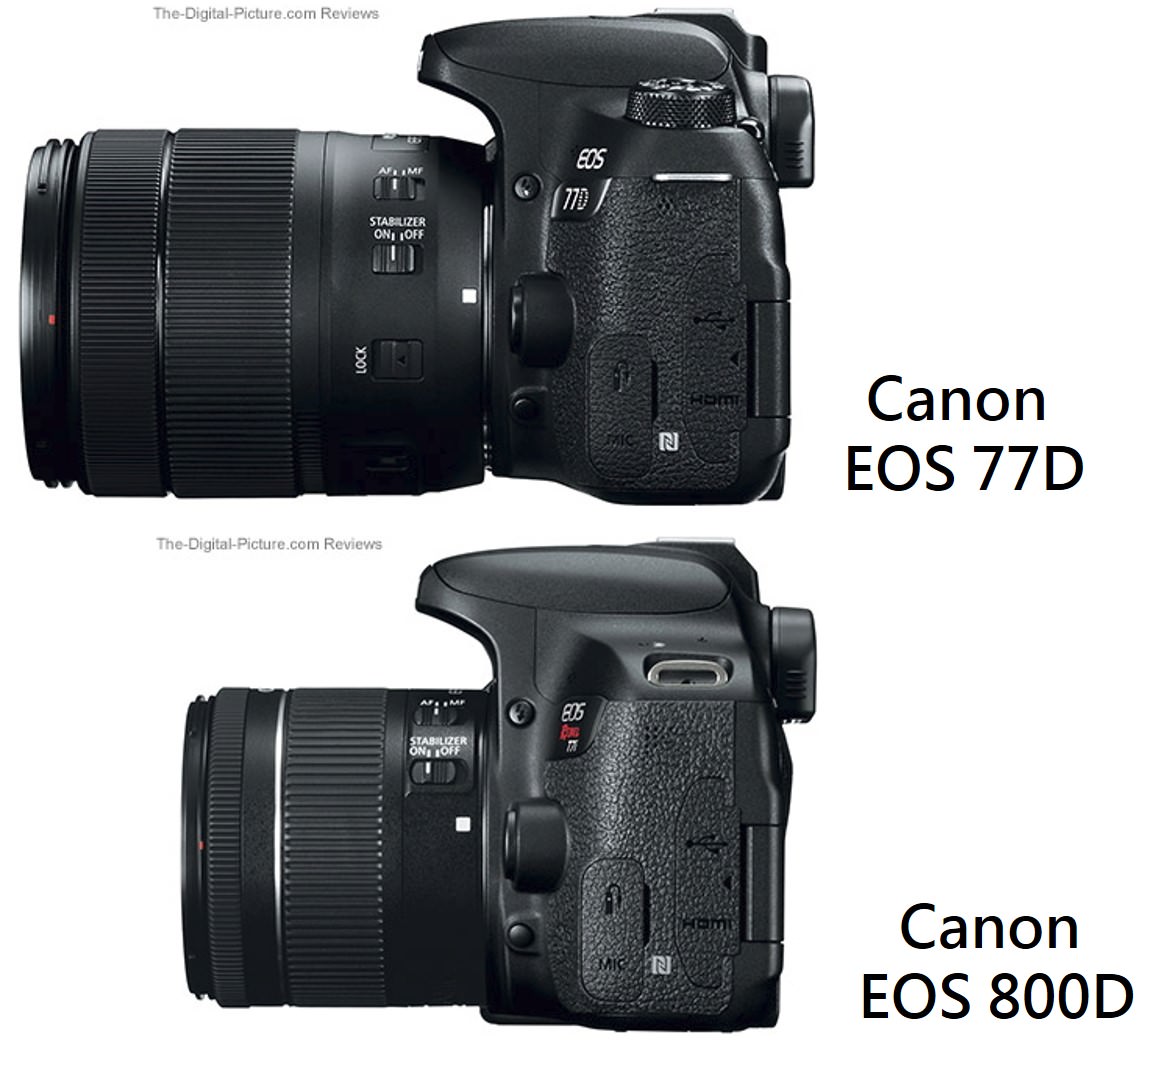 [比攝影72] Canon 2017 上半年 Canon 77D 、 800D 規格比較以及 EOS M6 介紹